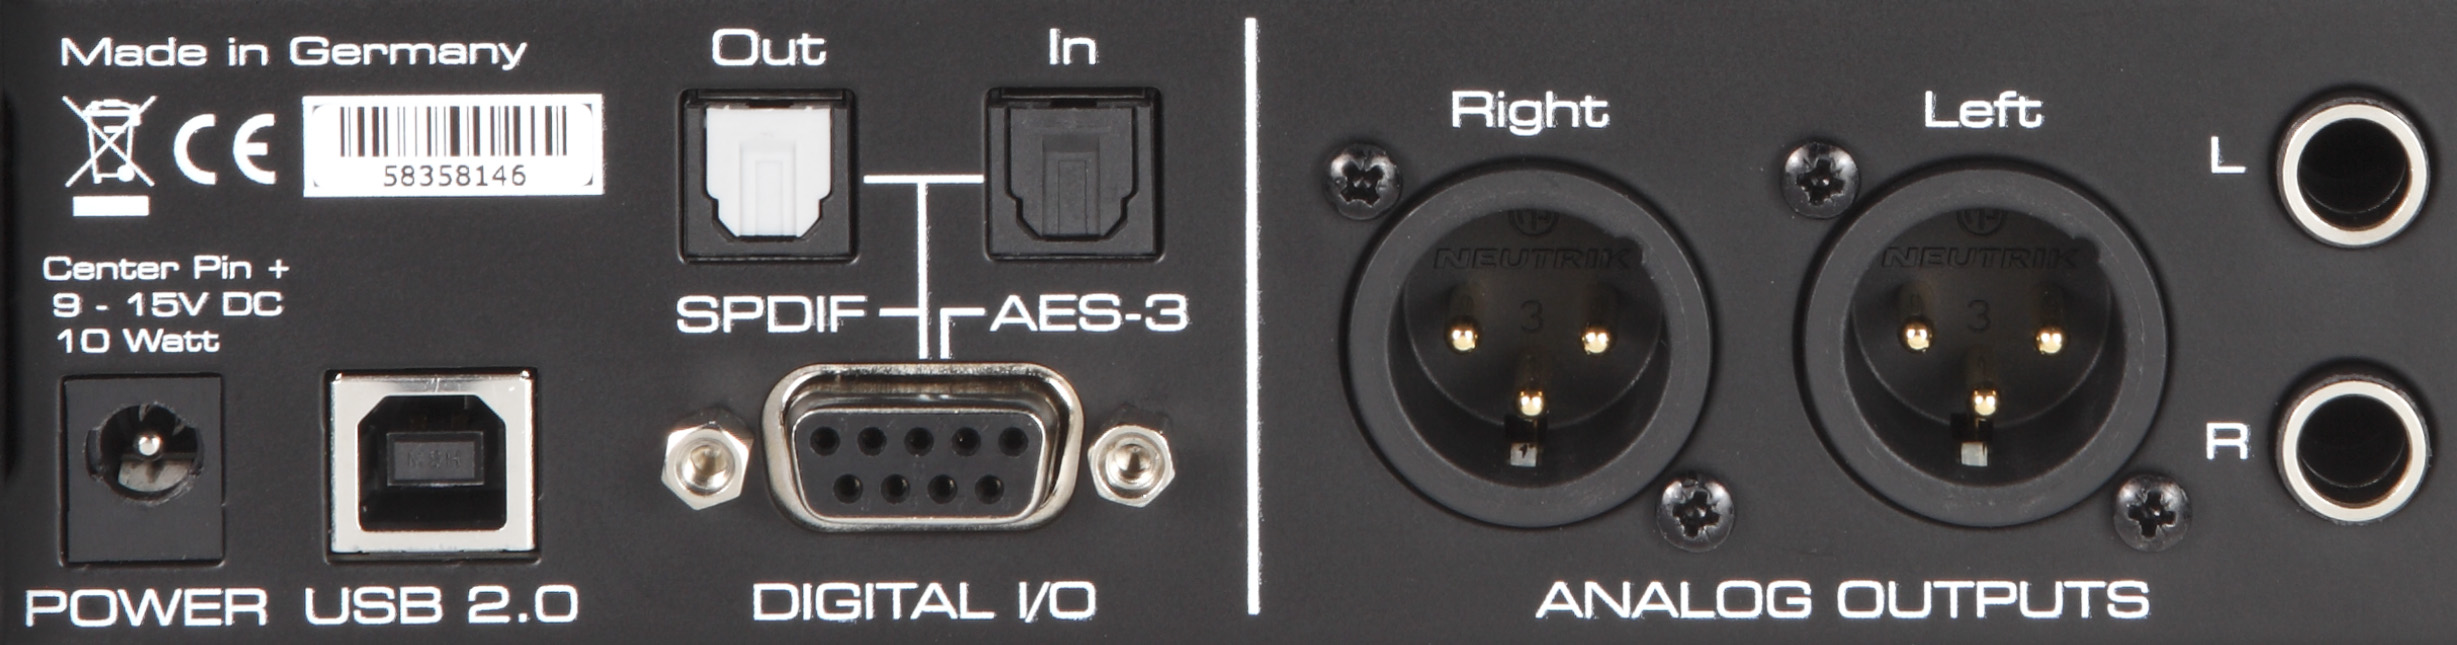 Die optischen Buchsen oben Links verarbeiten neben S/PDIF auch Digitalsignale im ADAT-Standard.